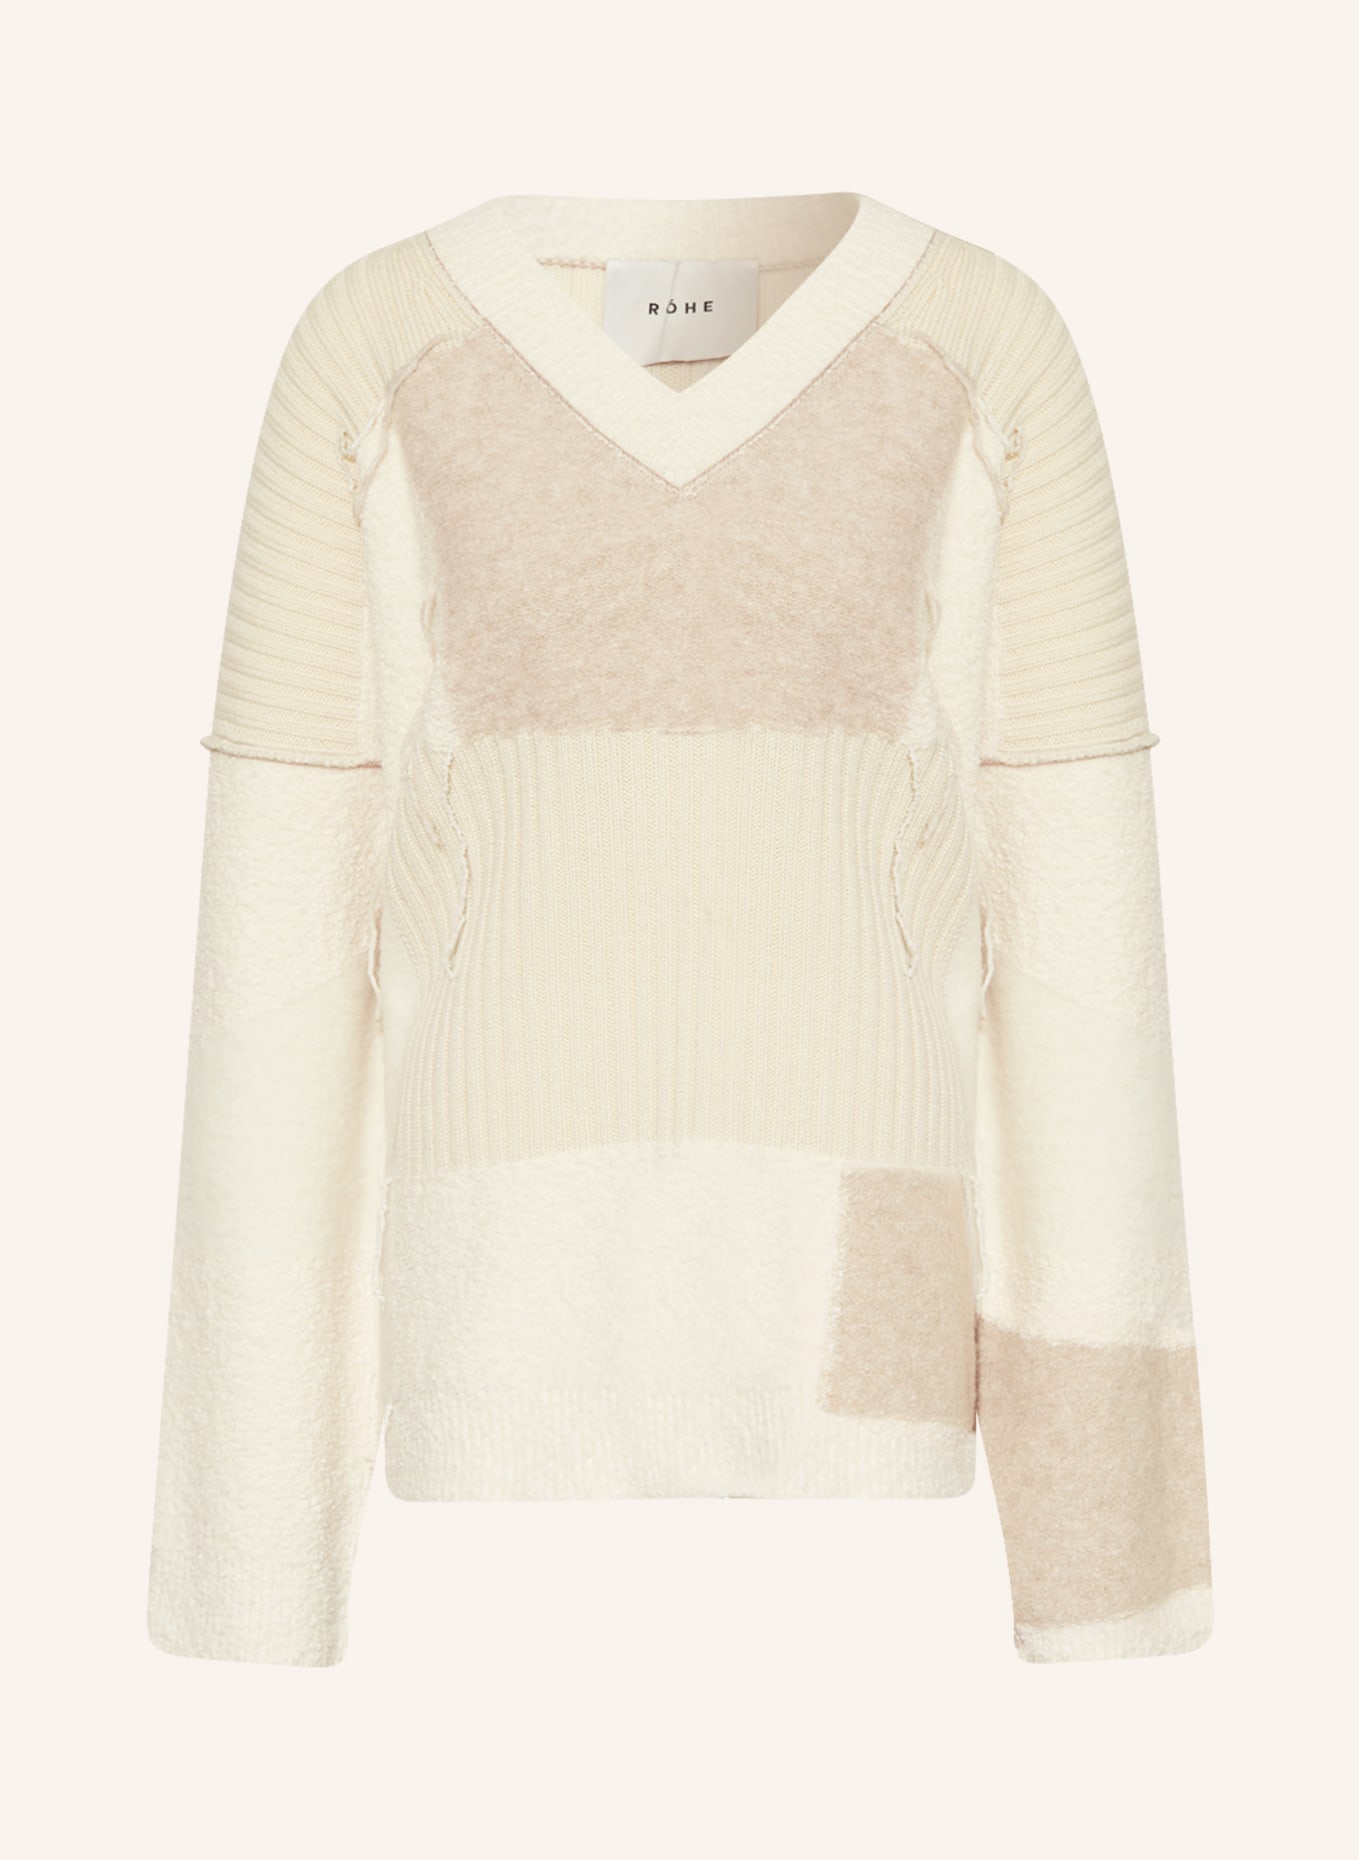 RÓHE Sweater, Color: ECRU/ BEIGE (Image 1)